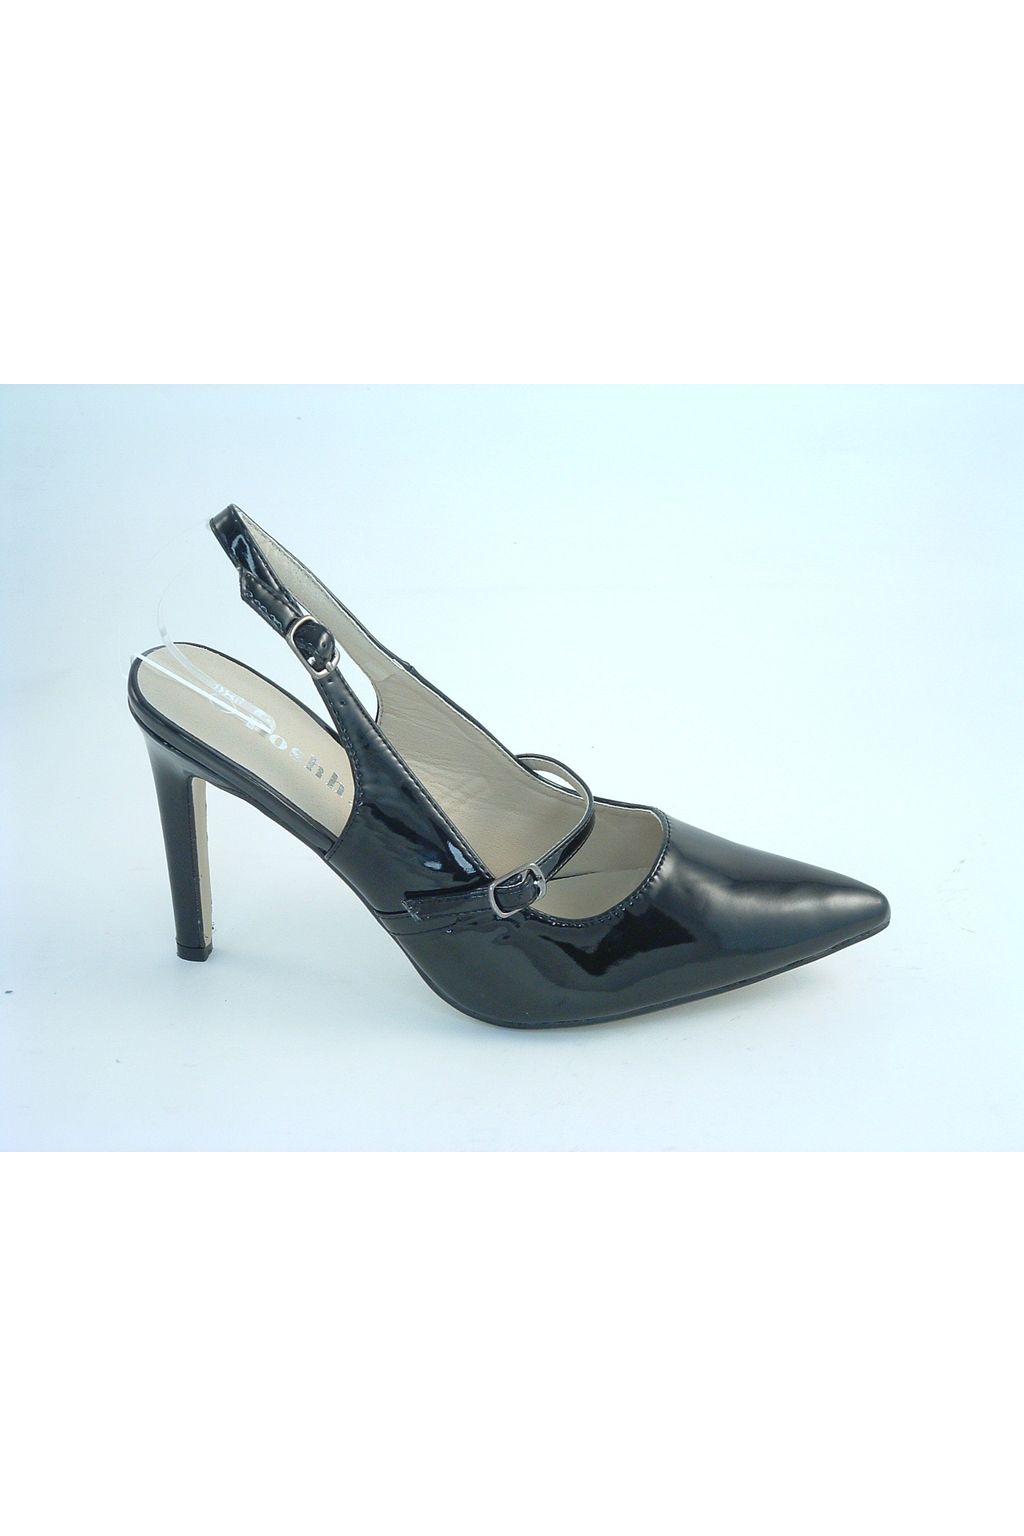 Divine Black Patent Shoes Divine1694